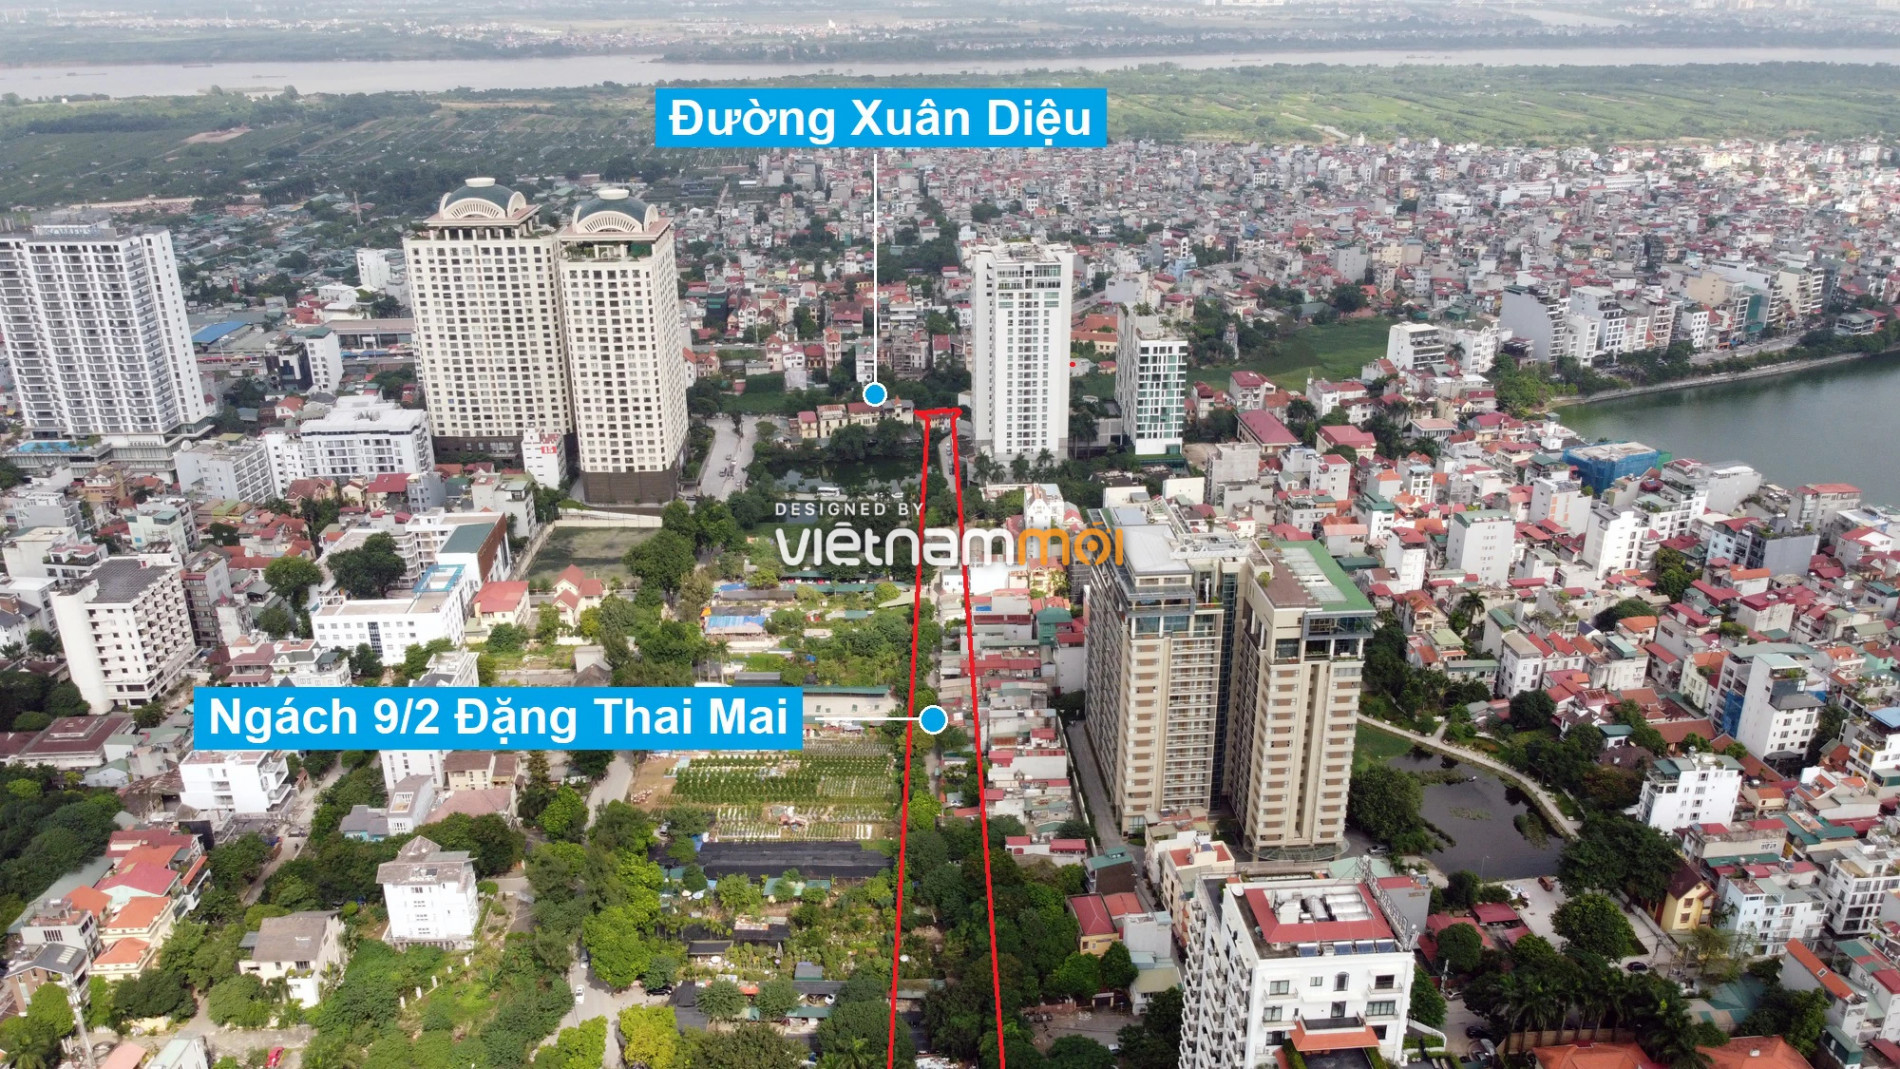 Những khu đất sắp thu hồi để mở đường ở quận Tây Hồ, Hà Nội (phần 6) - Ảnh 3.